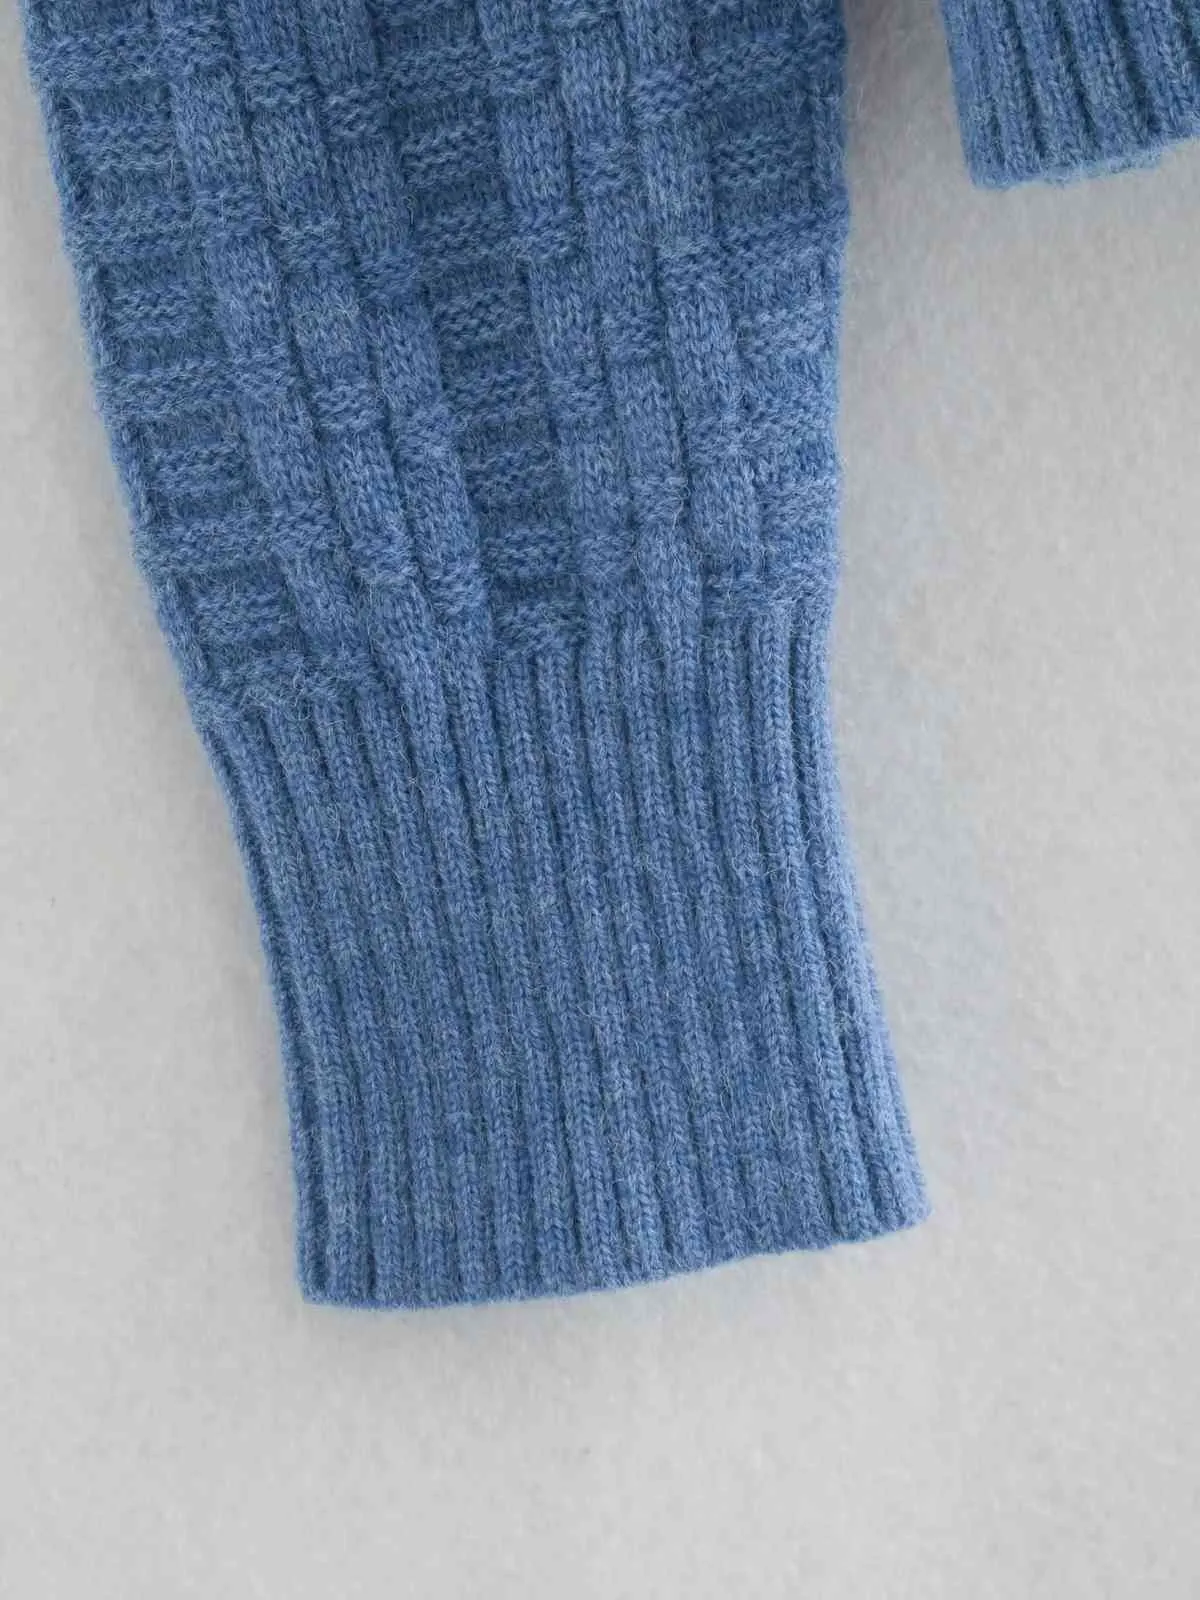 gestrickte blaue kurze Strickjacke Frauen lässig übergroße Pullover Strickjacken Herbst Winter graue Tops Streetstyle 210415